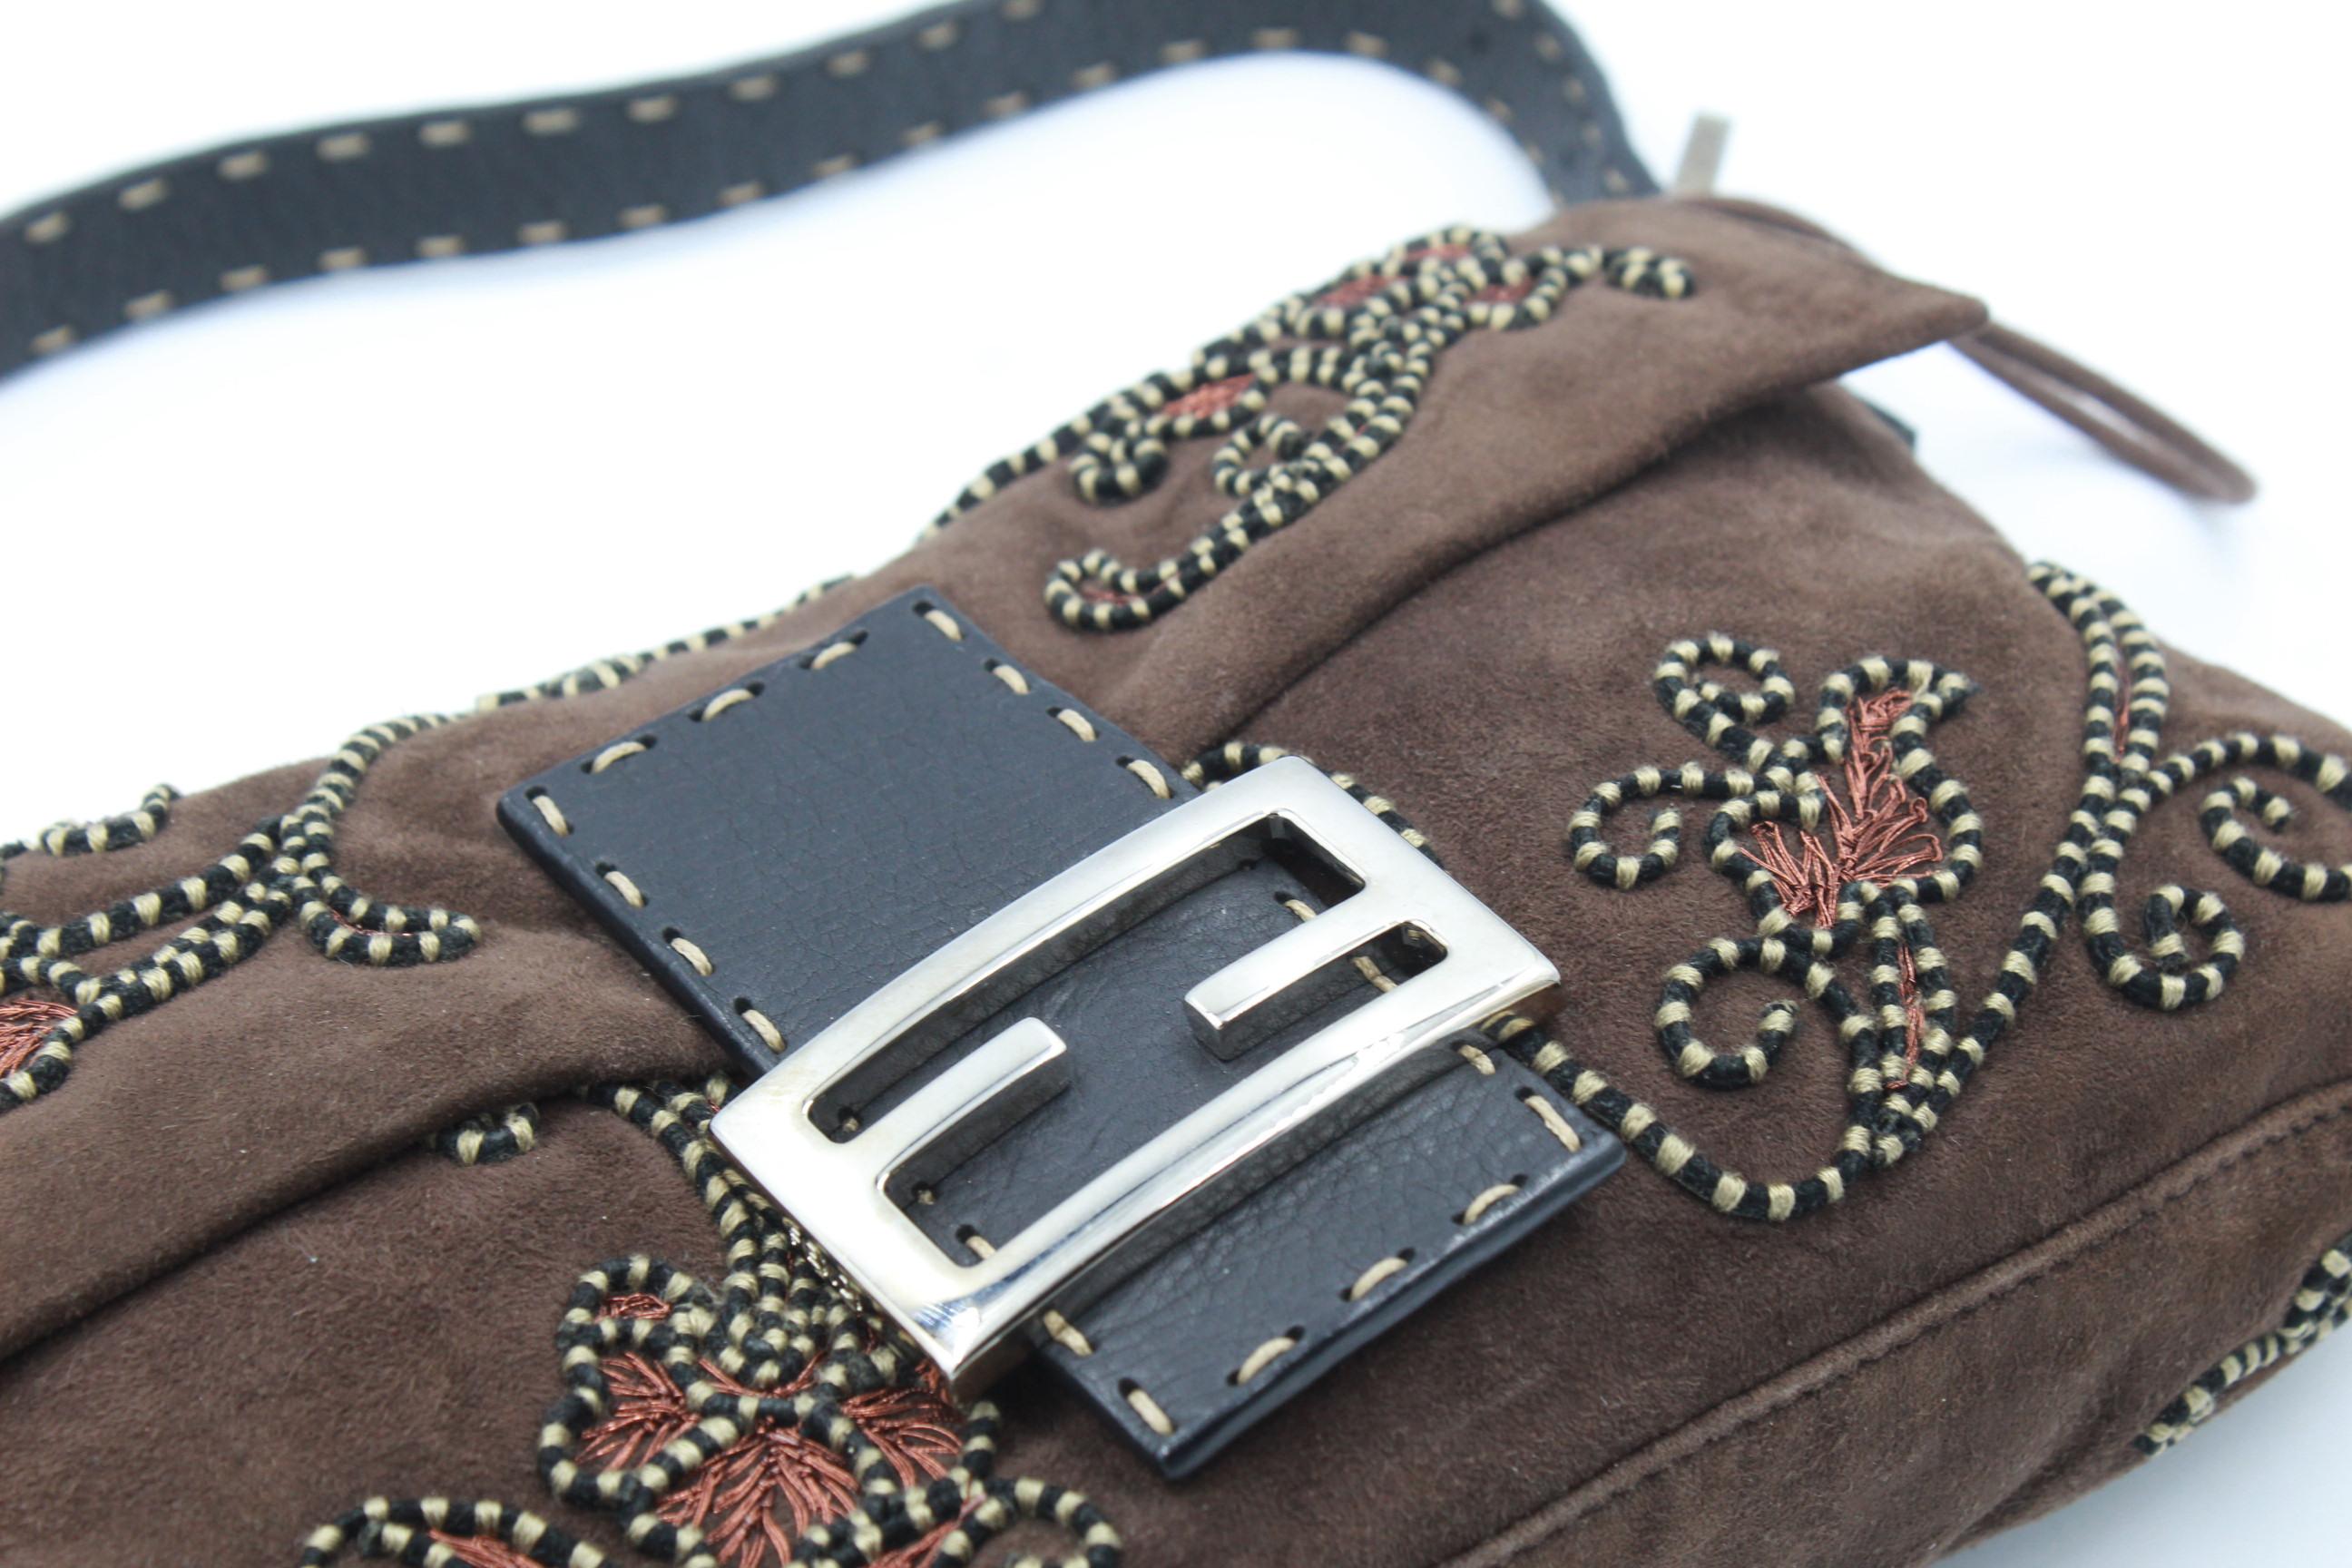 Gray Fendi Baguette handbag in velvet and embroidery